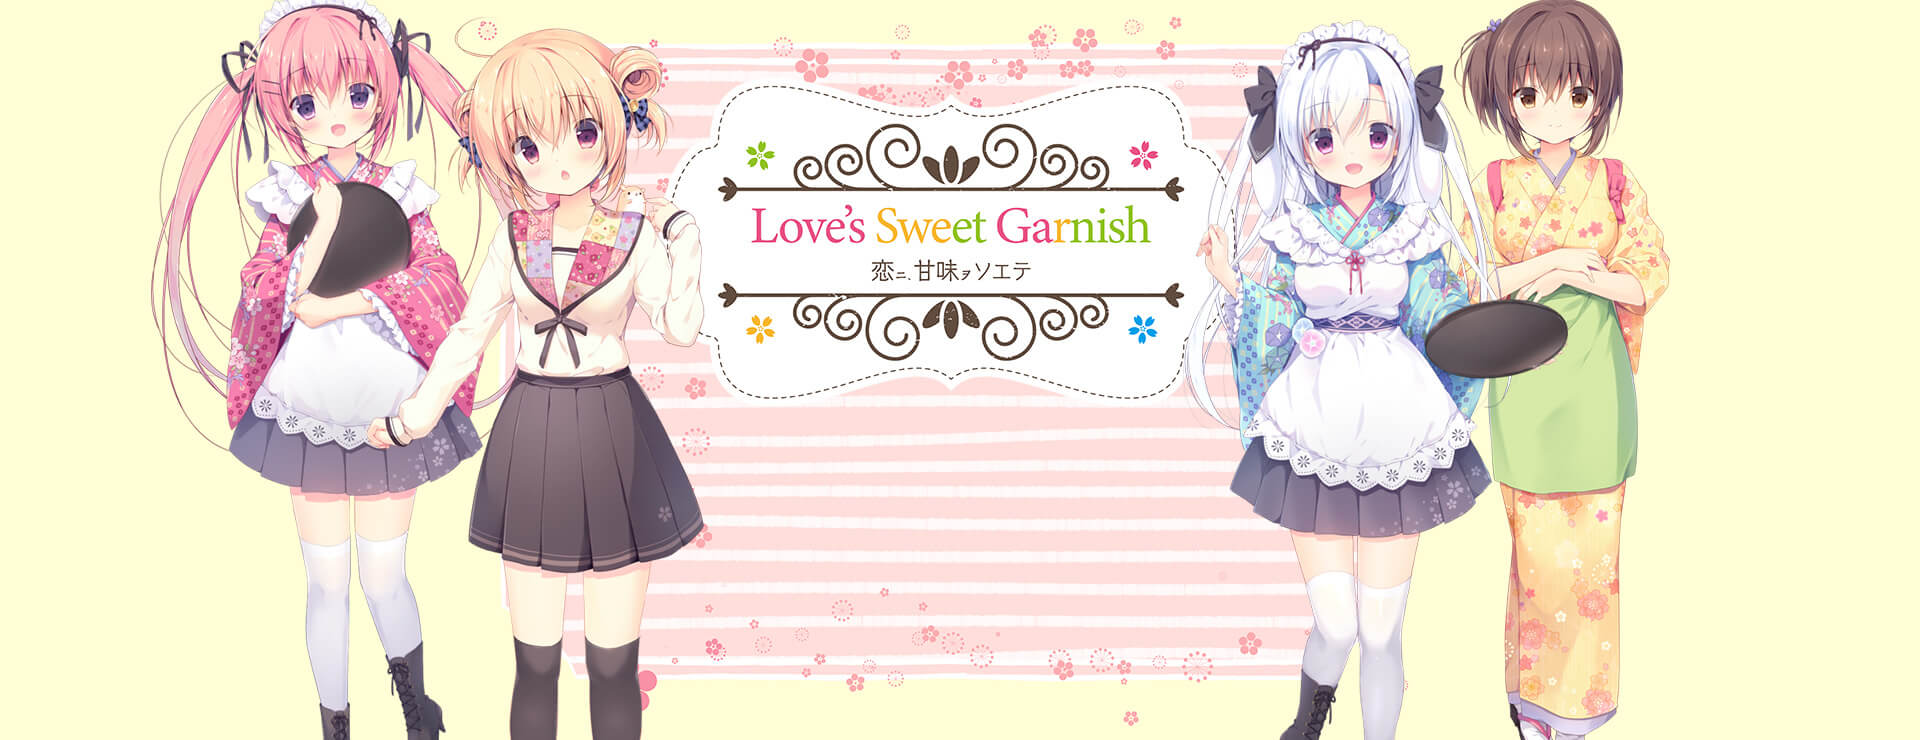 Love's Sweet Garnish - Powieść wizualna Gra